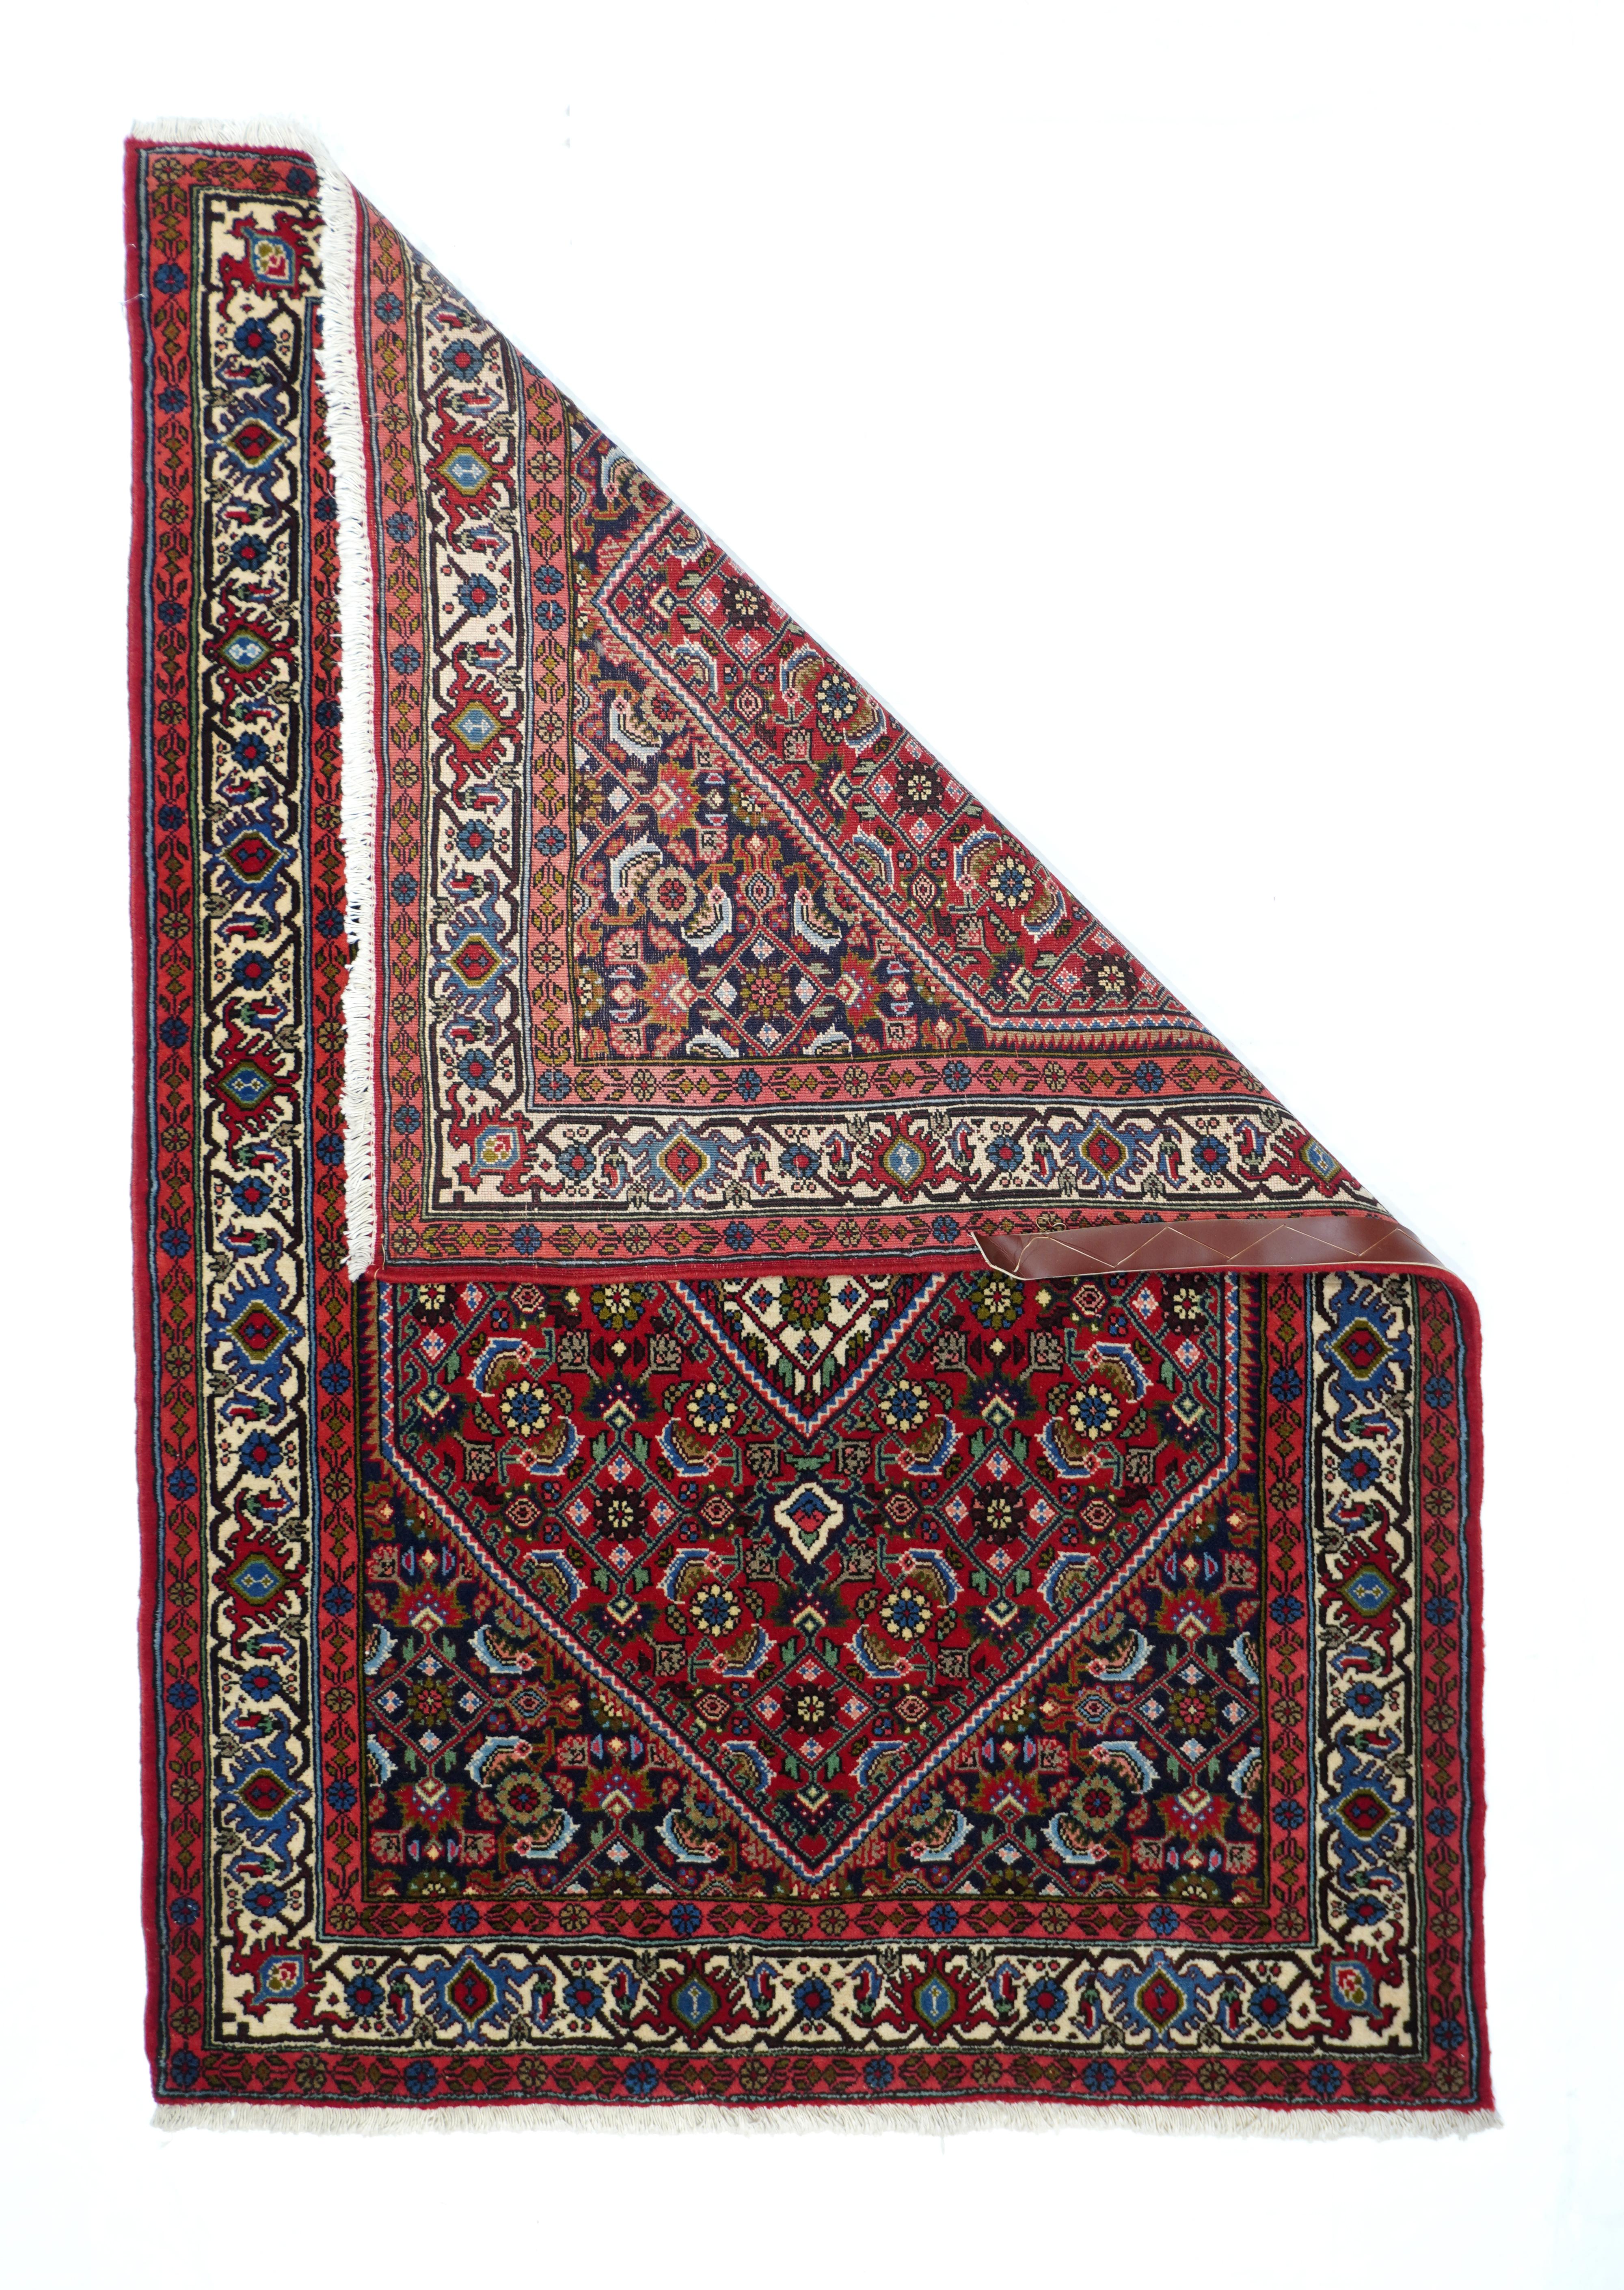 Vintage Bidjar Teppich 3'7'' x 5'1''. Das rote Feld zeigt einheitlich ein viersäuliges Herati-Muster aus Palmetten, Rosetten, geschwungenen Blättern und offenen Rauten, akzentuiert in Marine, Creme und Rost. Stroh- und mittelblaue reziproke